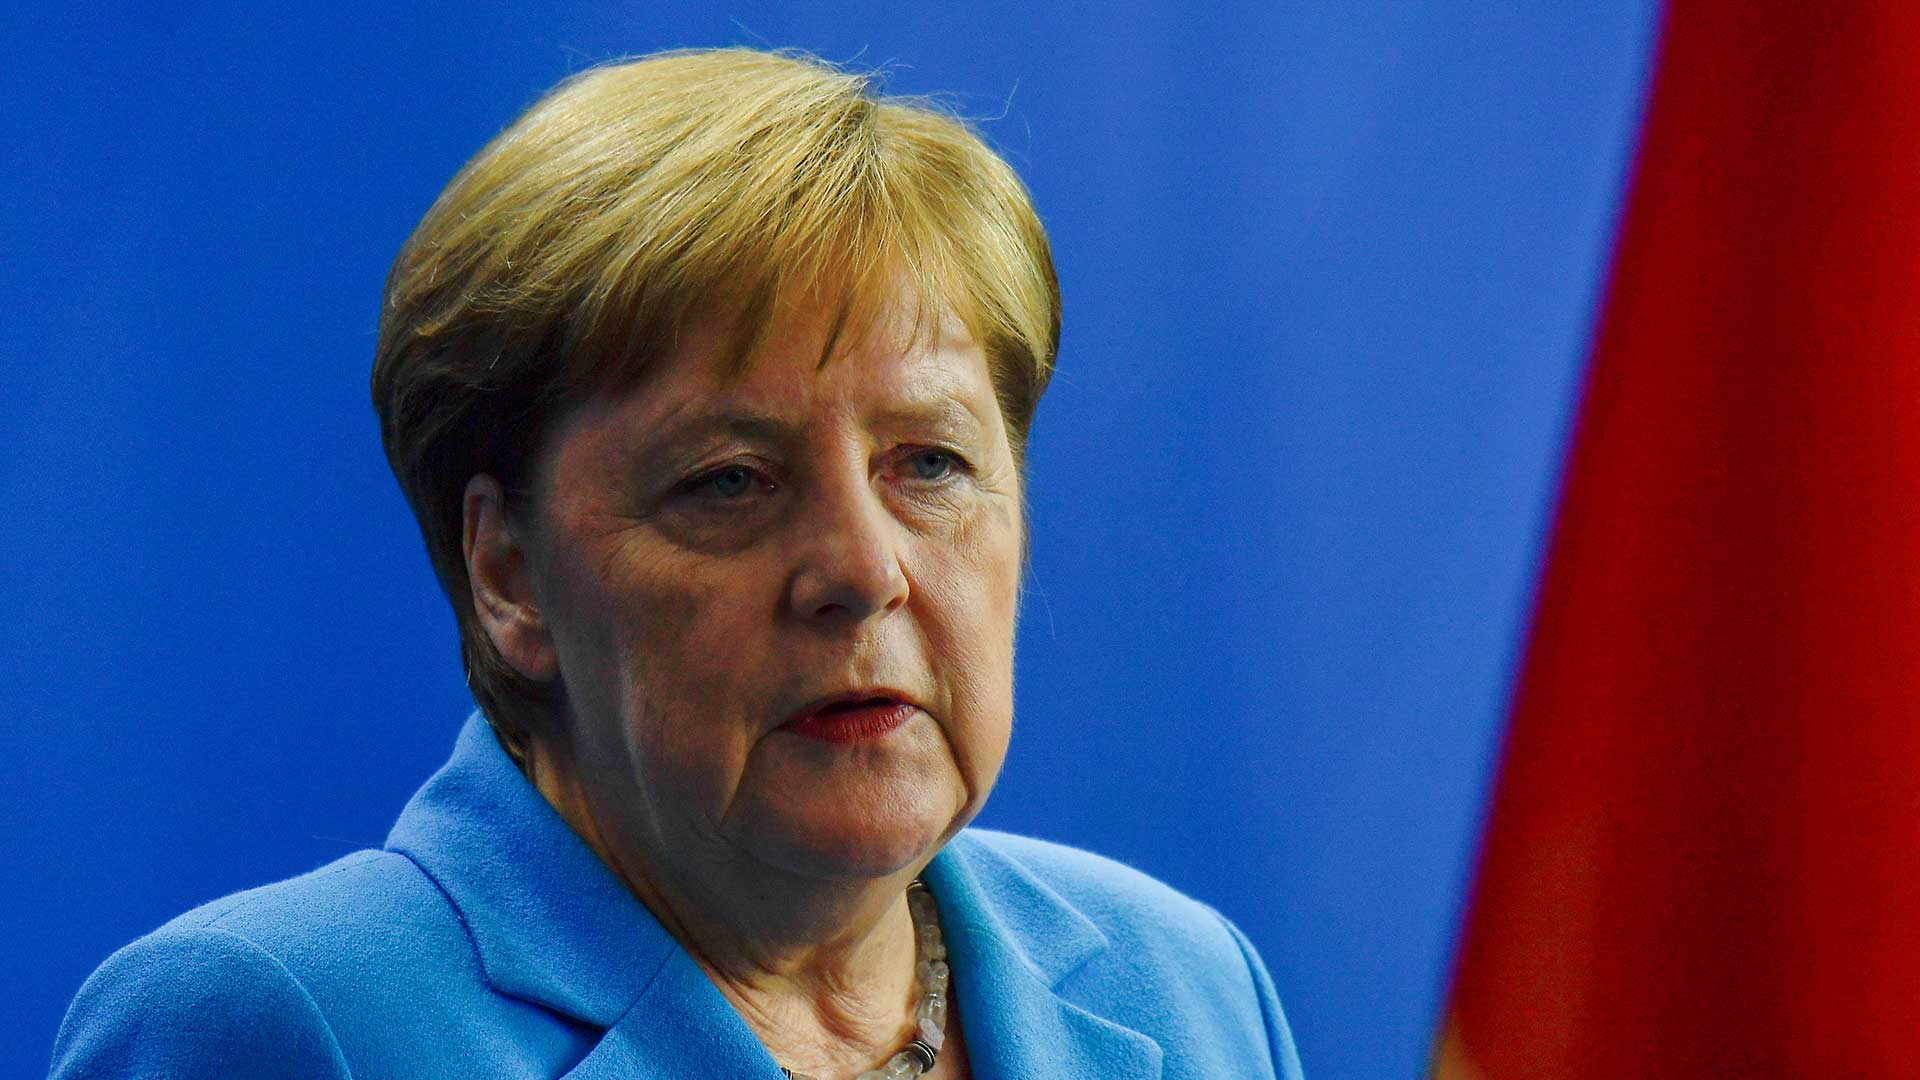 El diario alemán Bild denuncia la "censura" sobre el estado de salud de Merkel